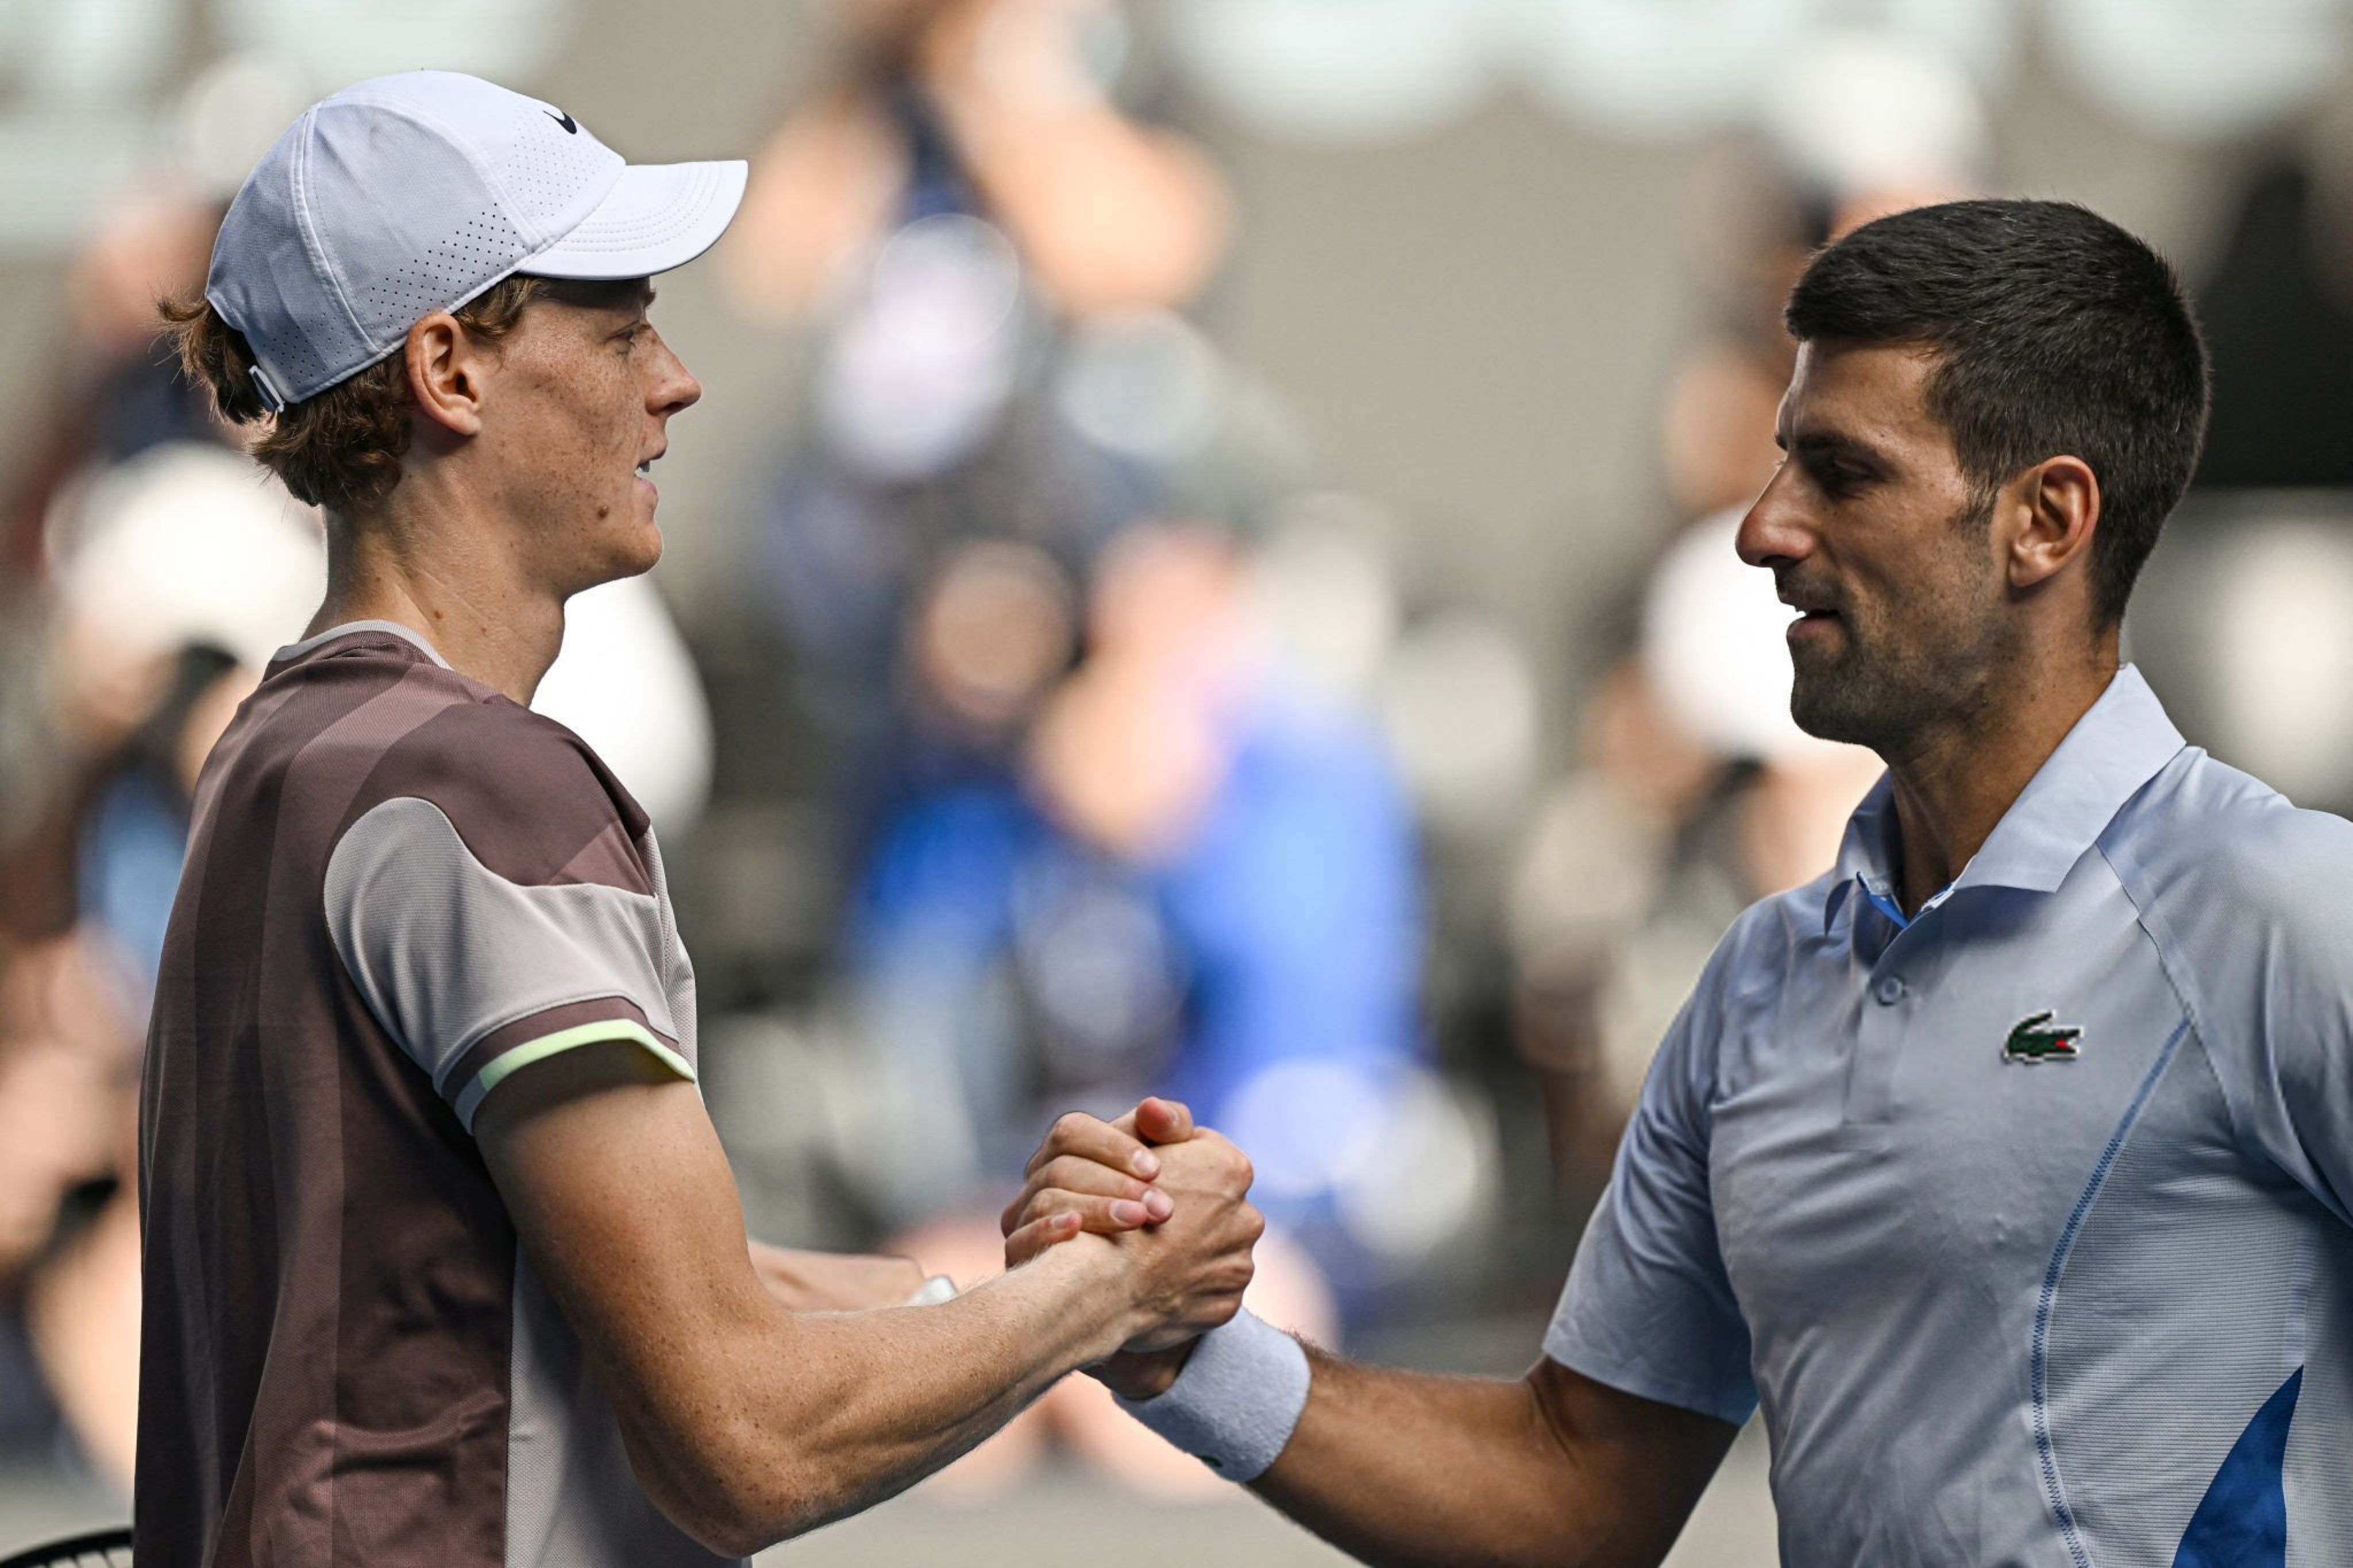 La stretta di mano tra Jannik e Novak a Melbourne (foto Getty Images)